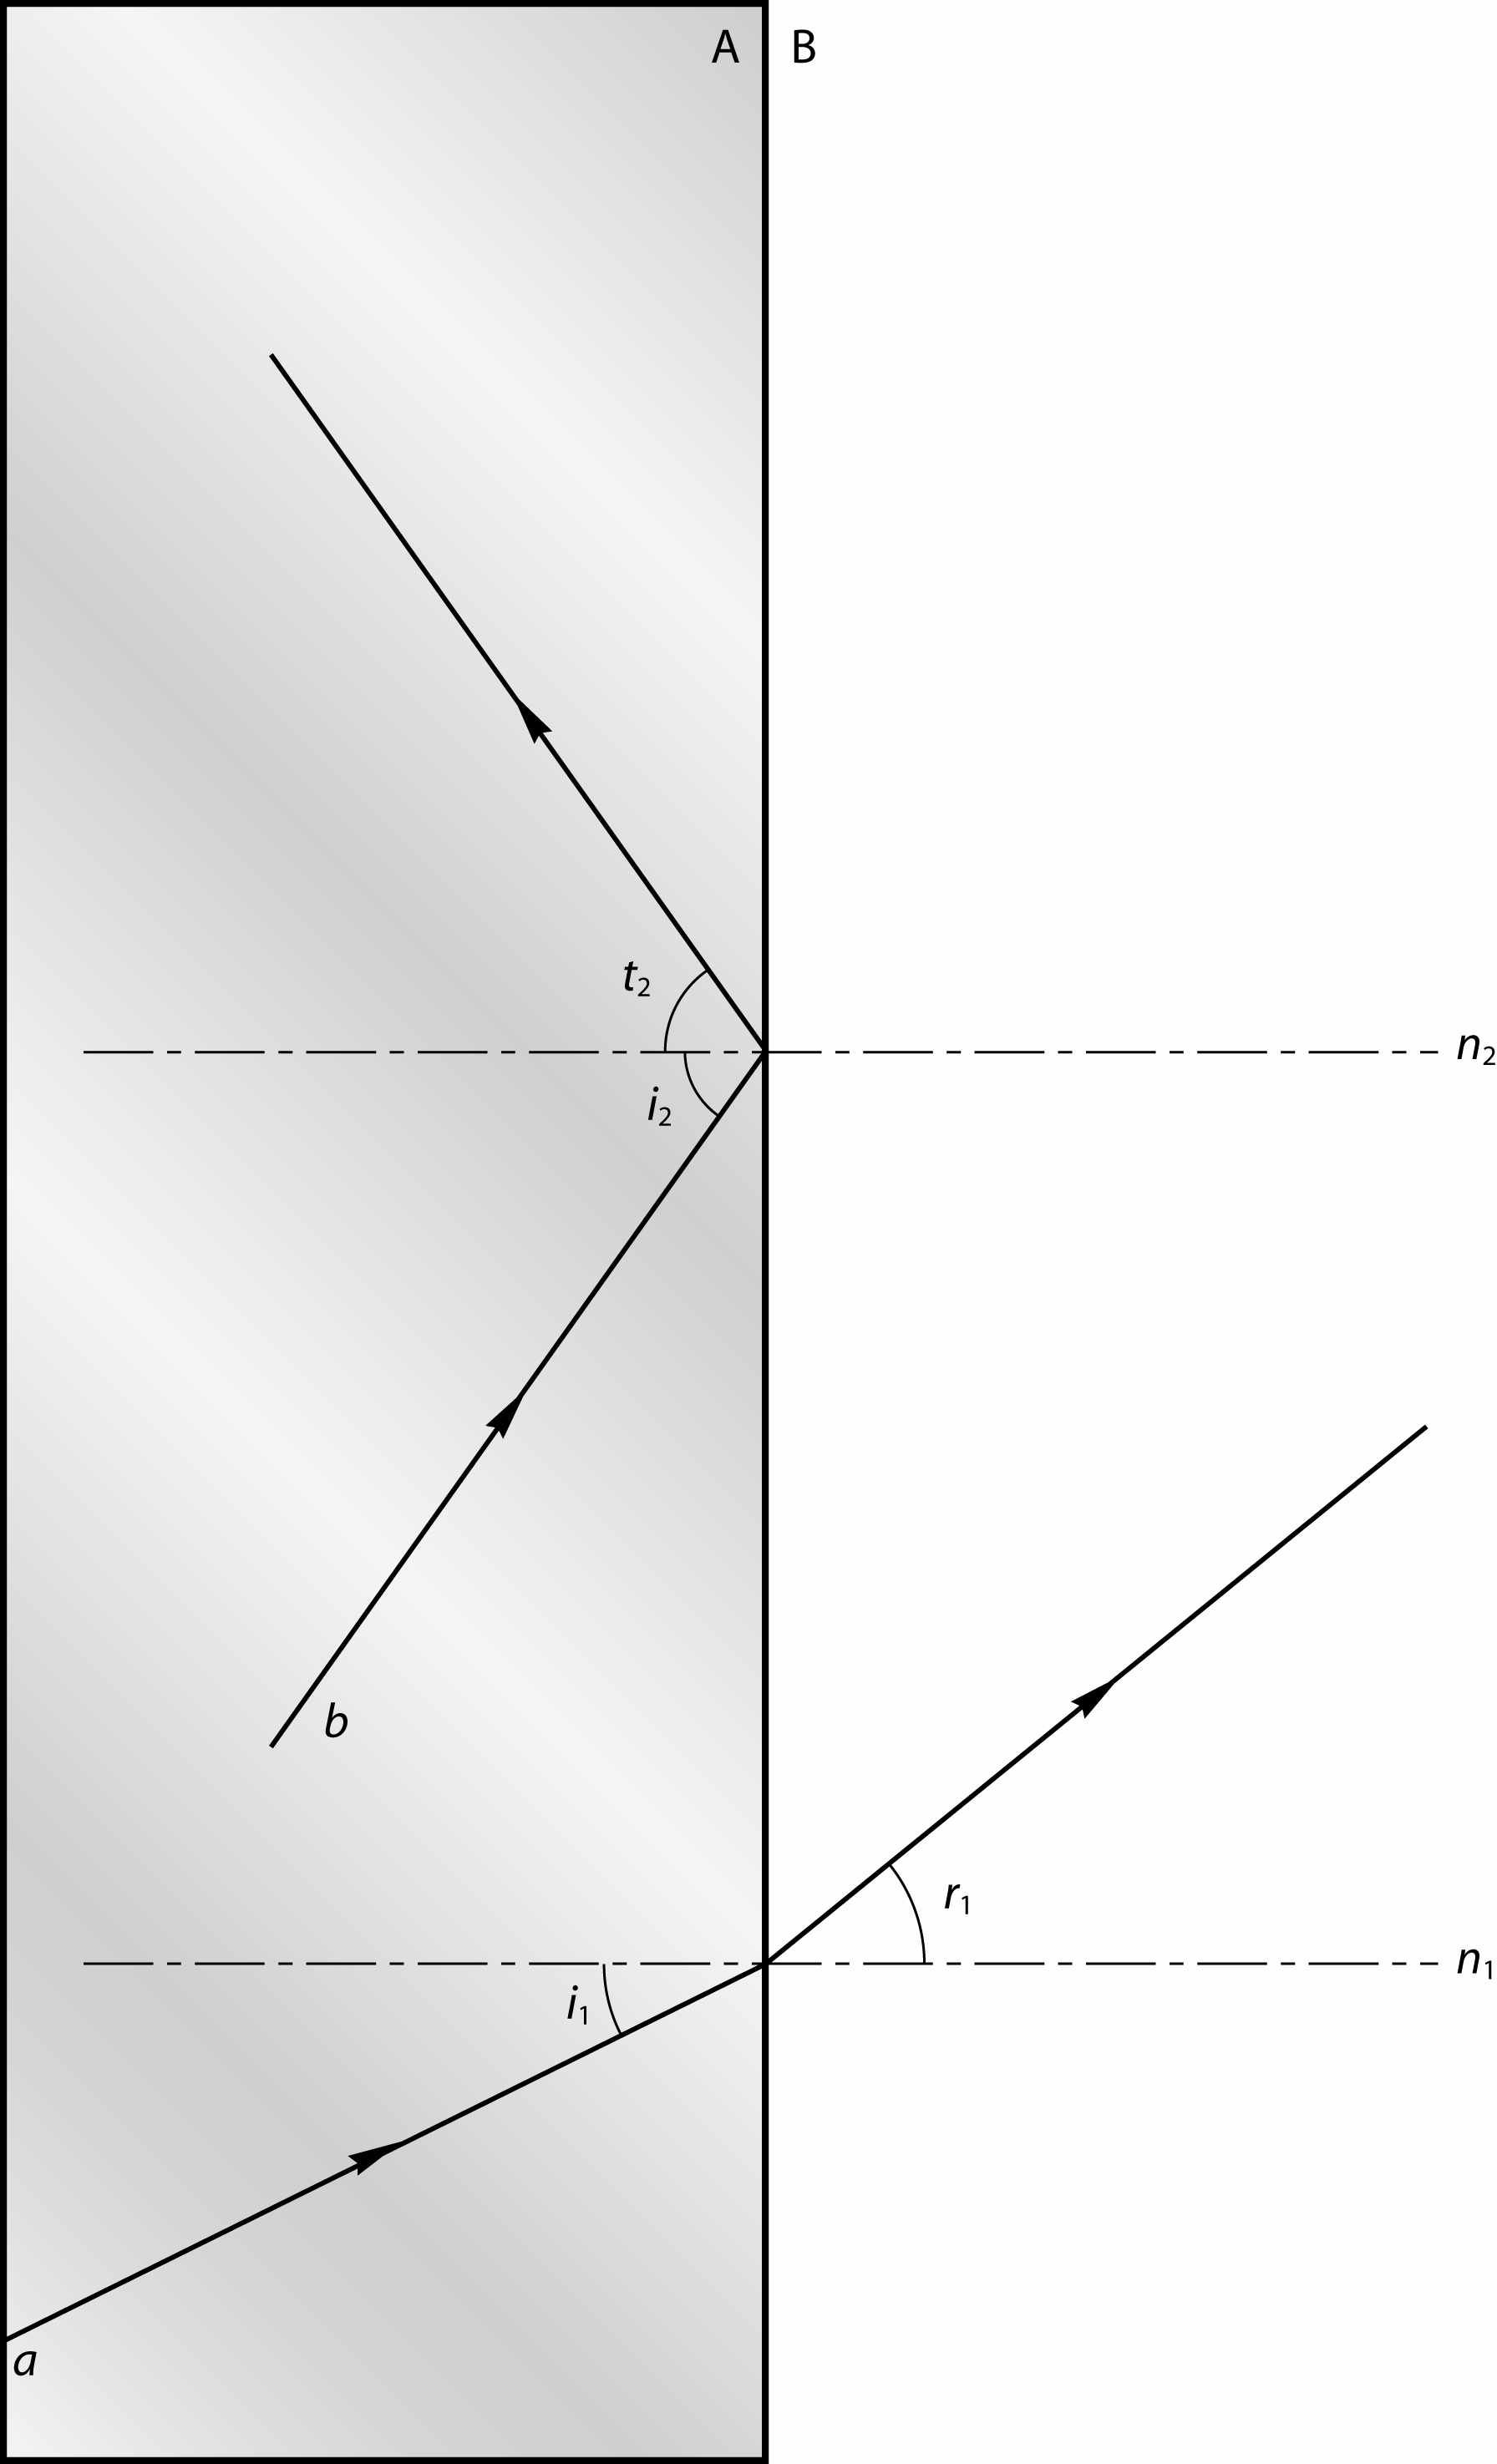 Figuur 6.10 c Zie figuur 6.10. i 1 = 25 en n A B = 0,671 sin i1 na B = sin r 1 sin i sin(25 ) sin r = = r = 39 1 1 1 na B 0,671 d Bepaling grenshoek g: sin g = 0,671 g = 42,1 Zie figuur 6.10. Opmeten: i 2 = 55 i 2 is groter dan de grenshoek totale terugkaatsing i 2 = t 2 Zie figuur 6.